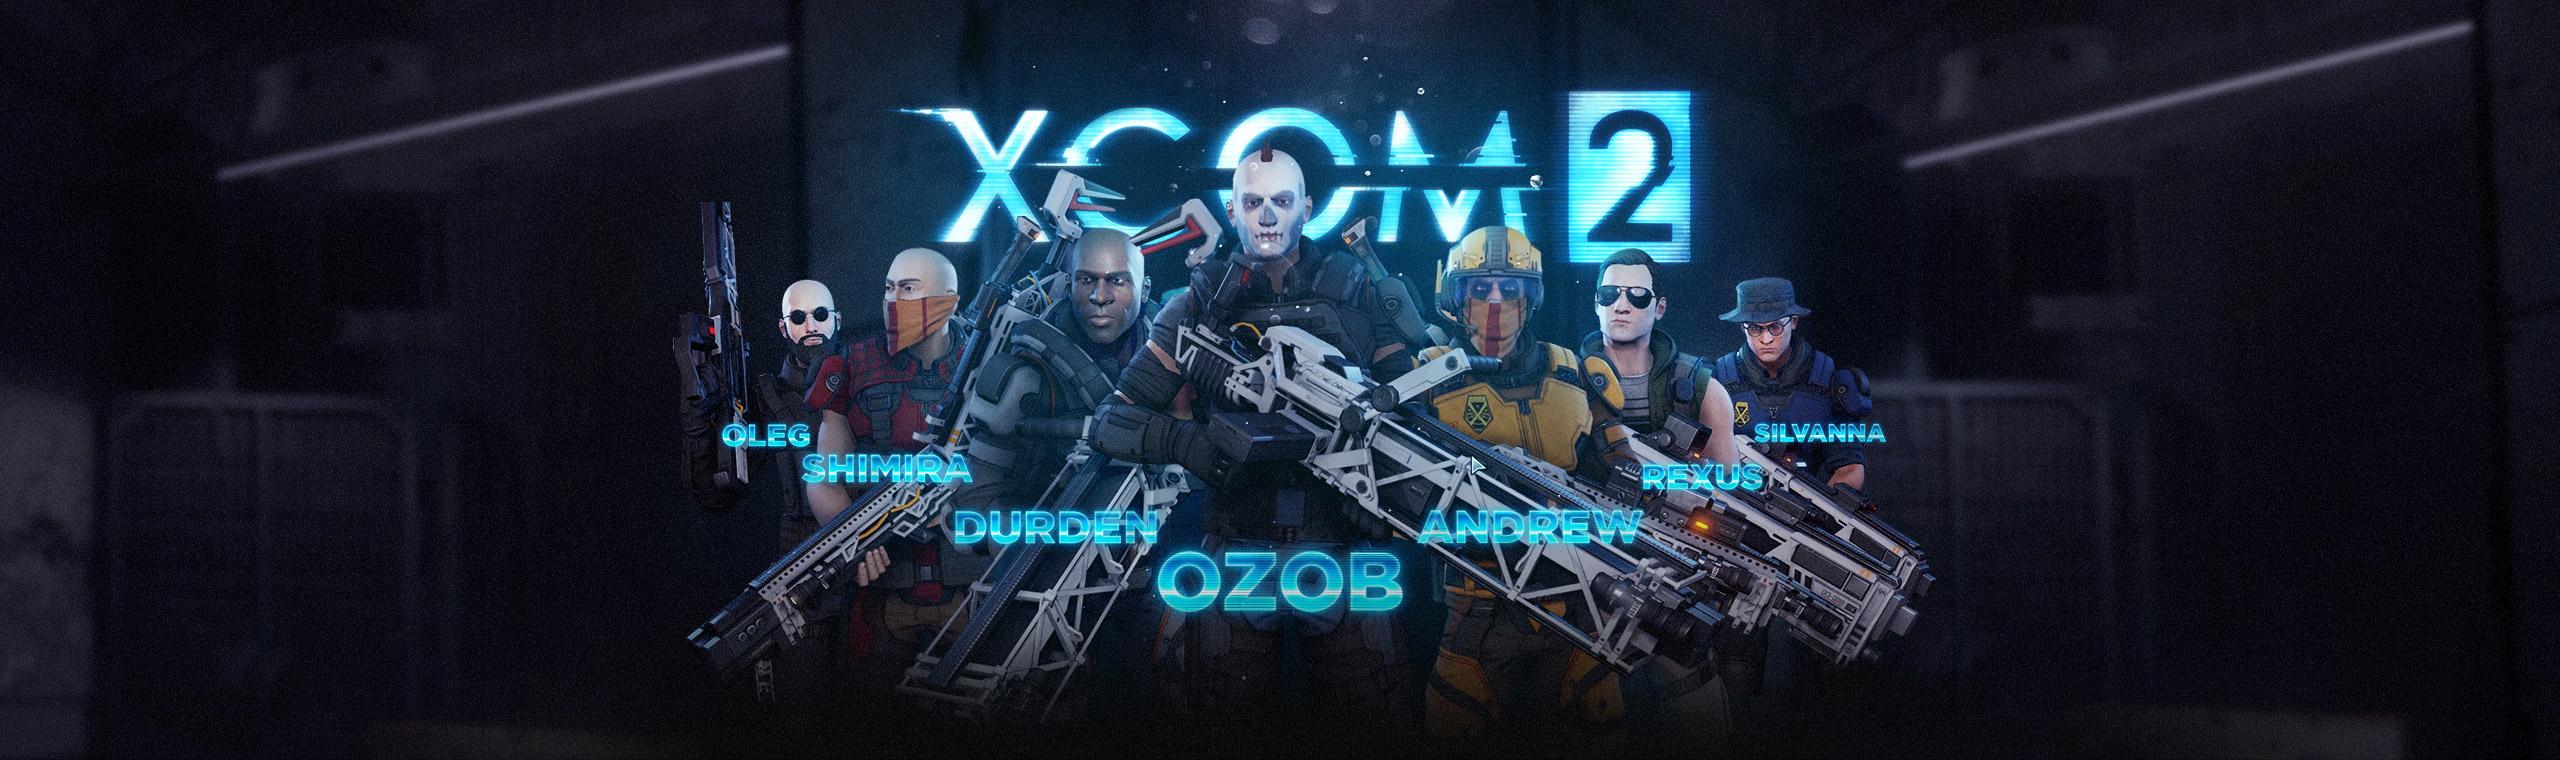 XCOM 2 - Esquadrão Cyberpunk